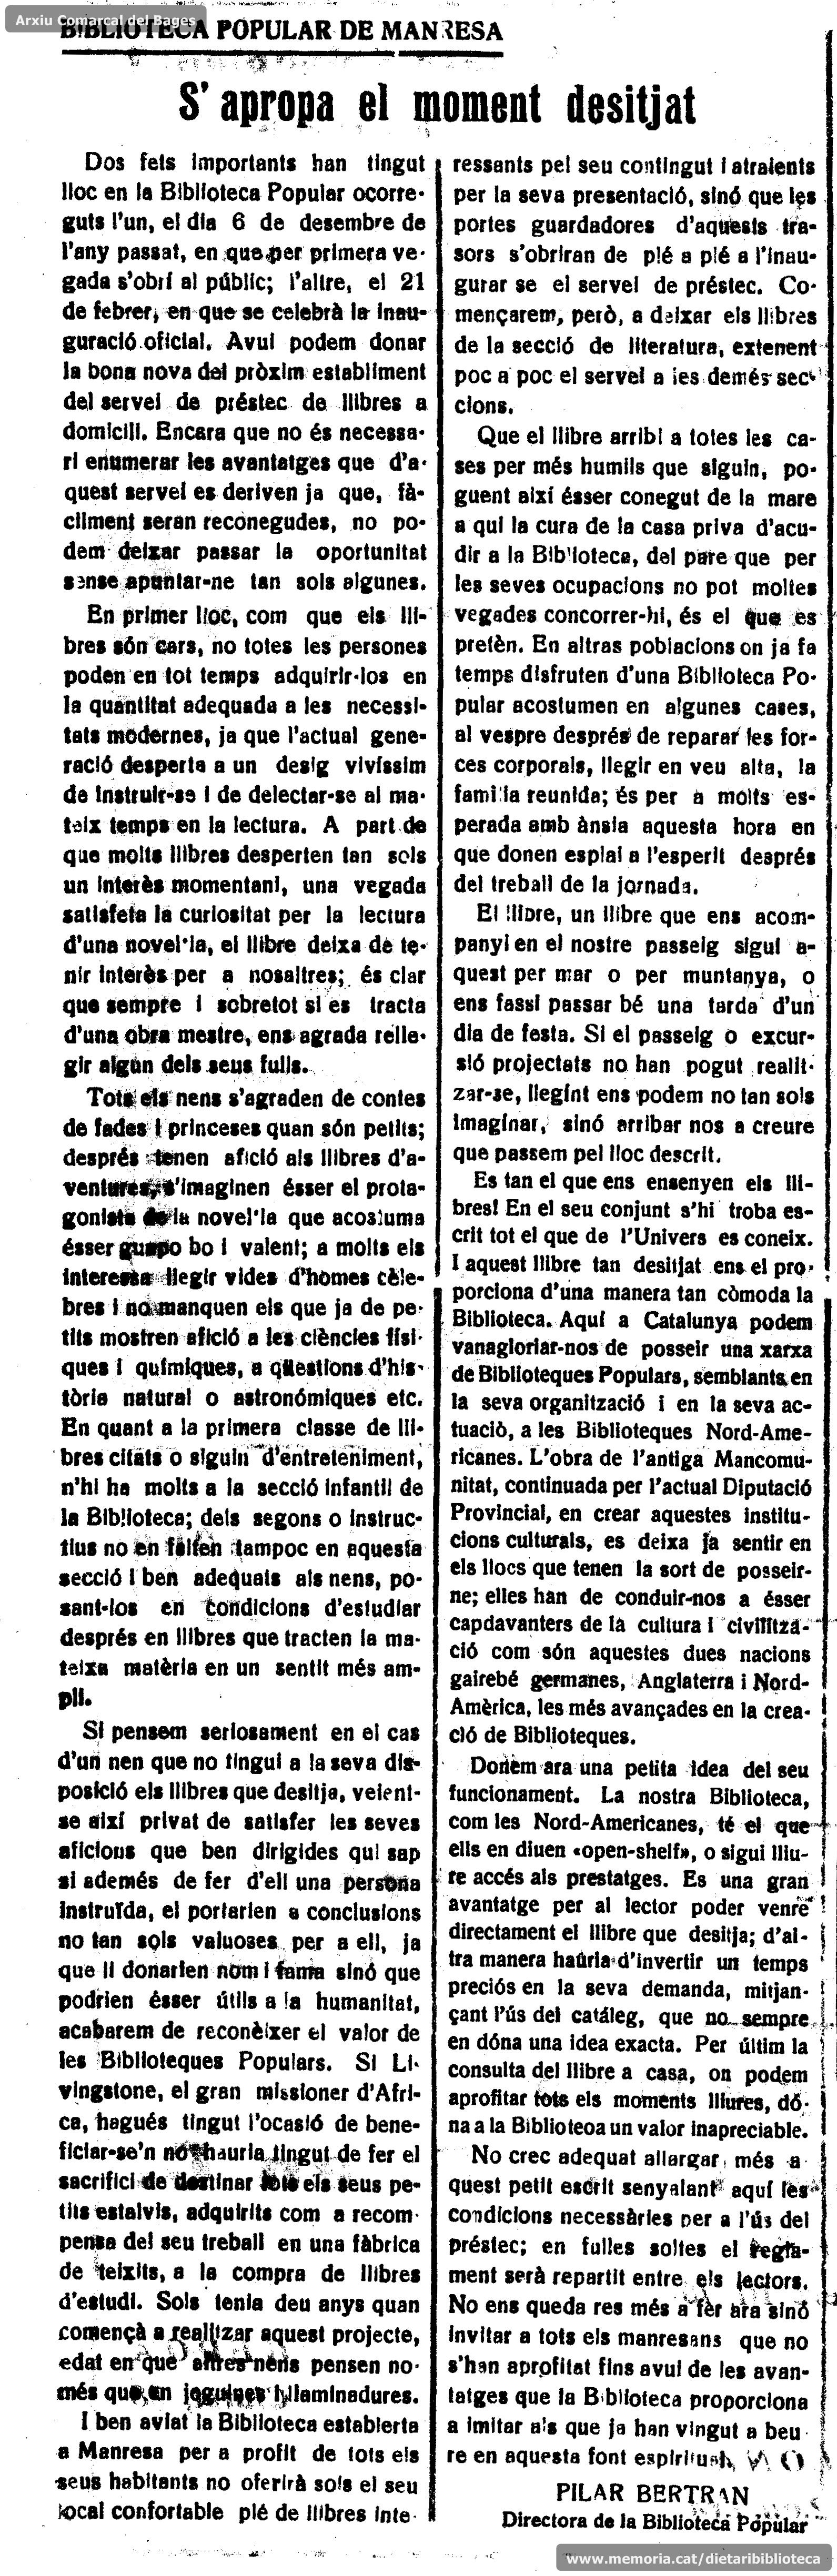 article_de_pilar_bertran_sapropa_el_moment_desitjat_._el_pla_de_bages._30-7-1929_marca.jpg